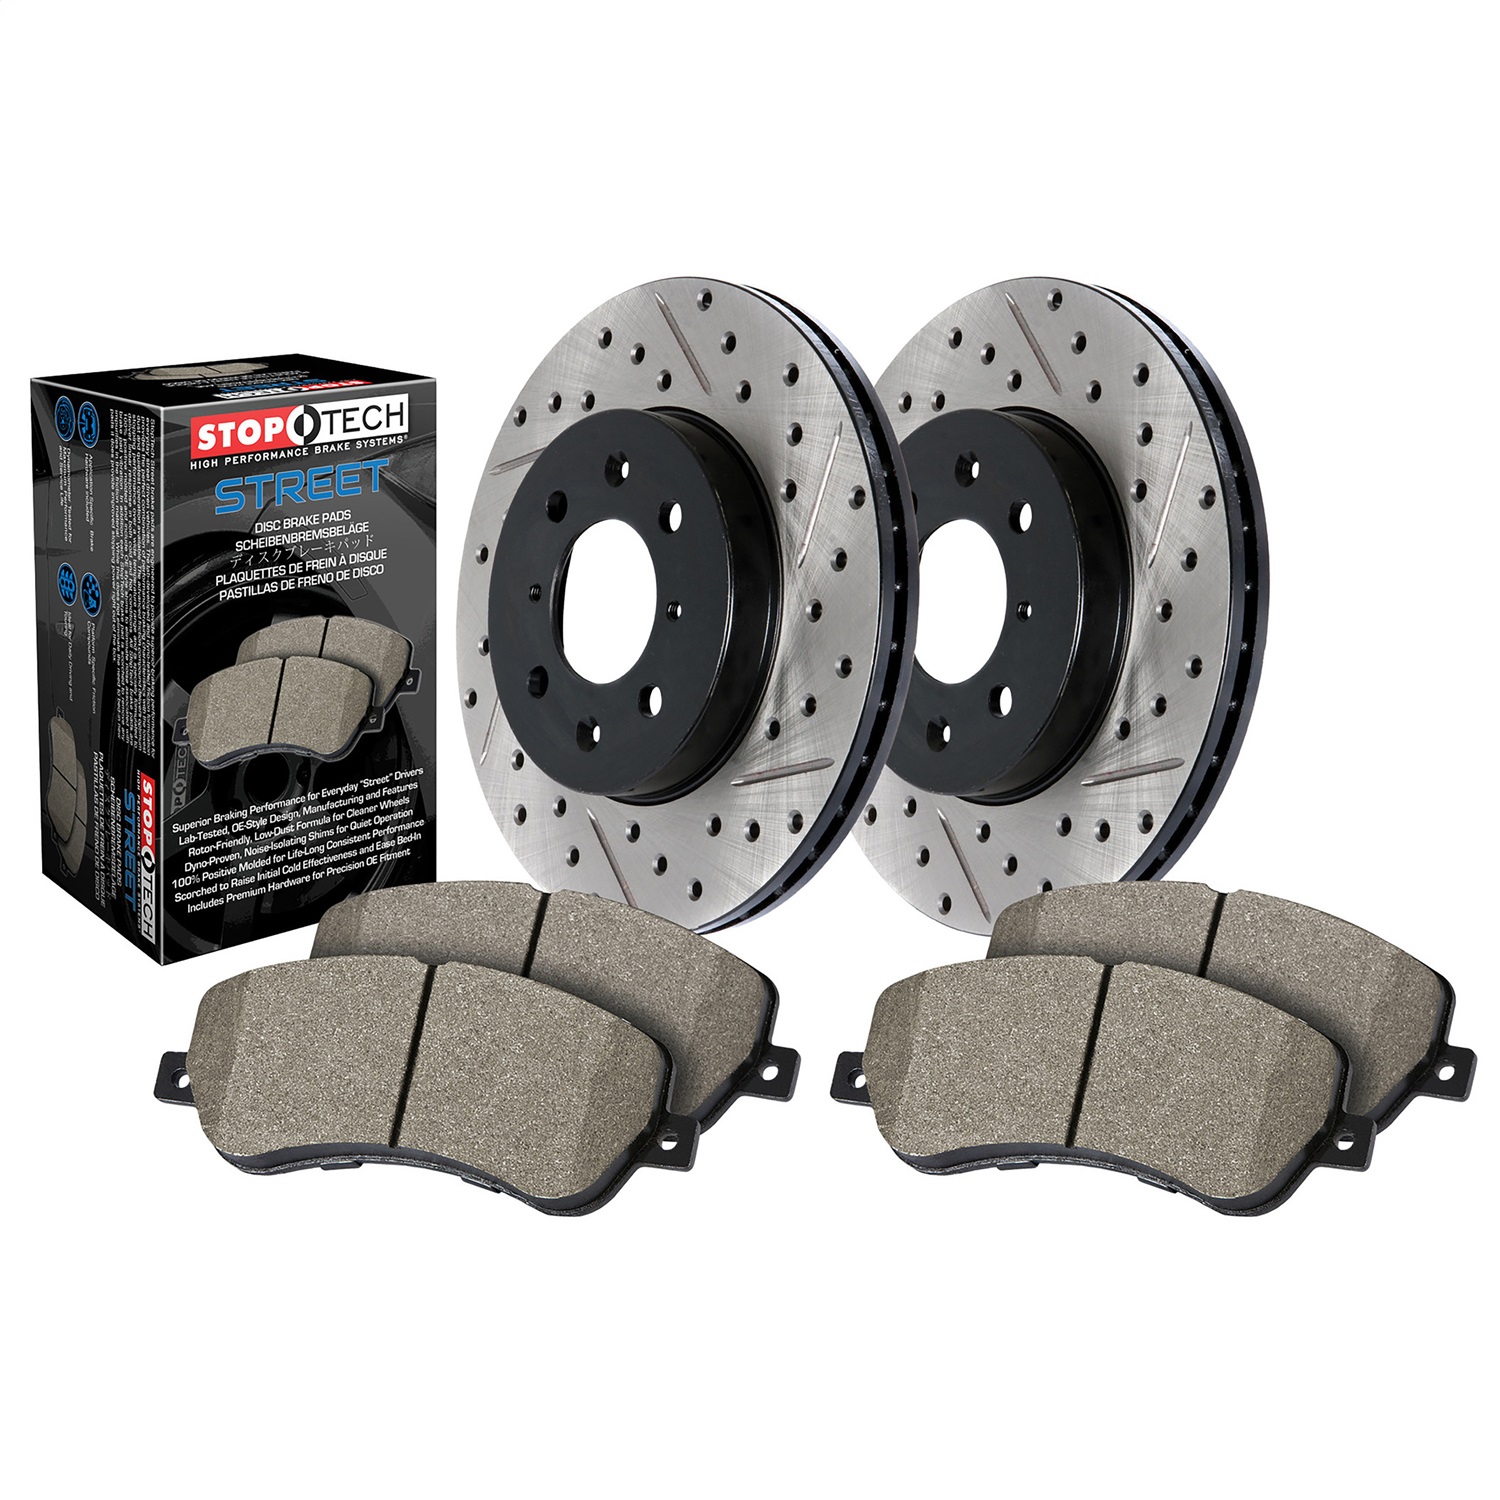 StopTech 938.44518 Disc Brake Upgrade Kit